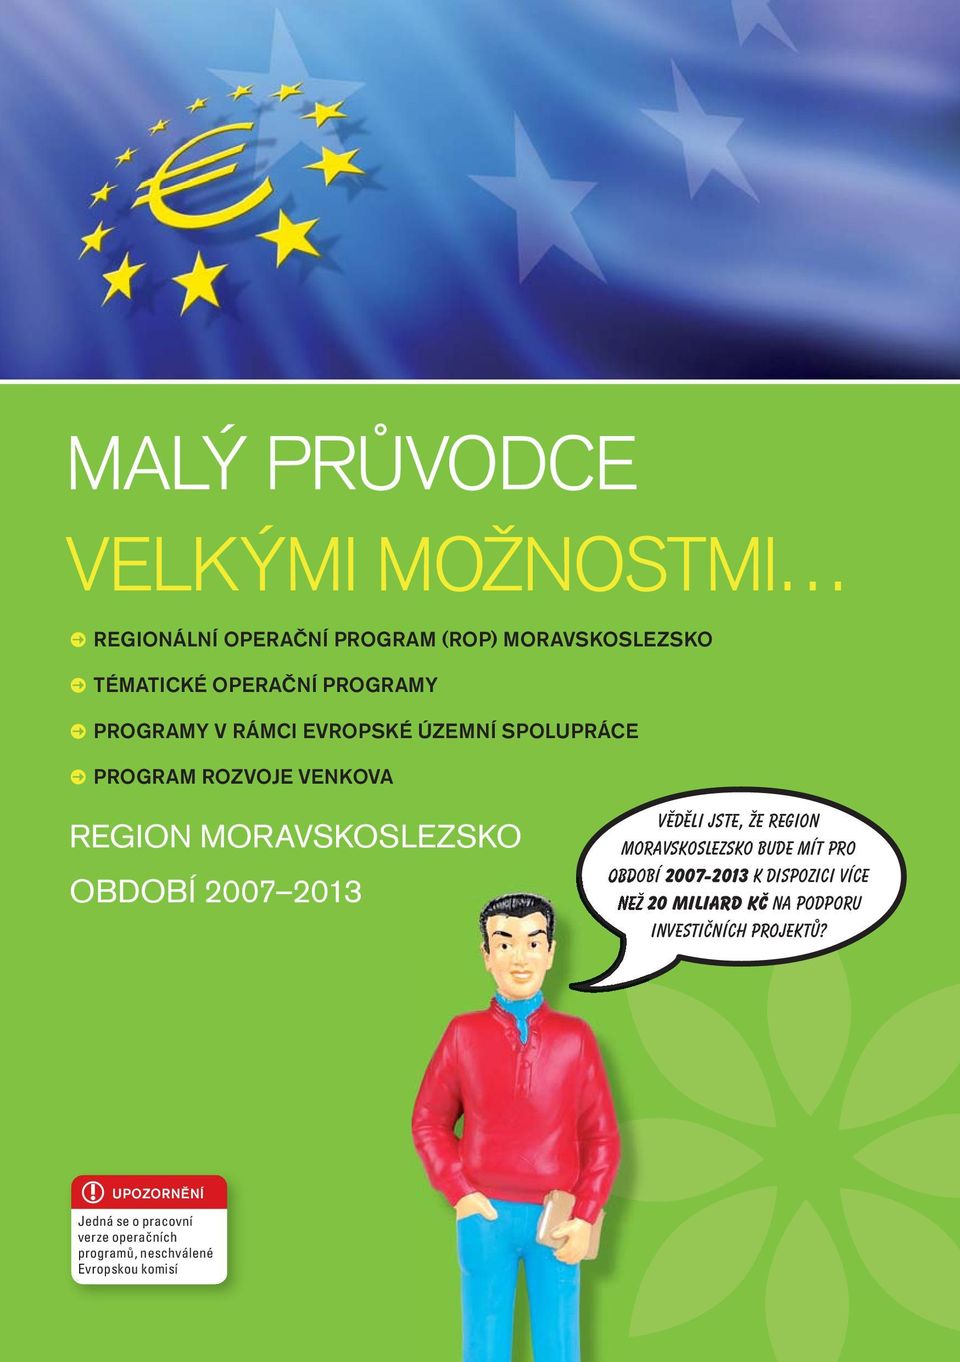 Věděli jste, že region Moravskoslezsko bude mít pro období 2007-2013 k dispozici více než 20 miliard Kč na